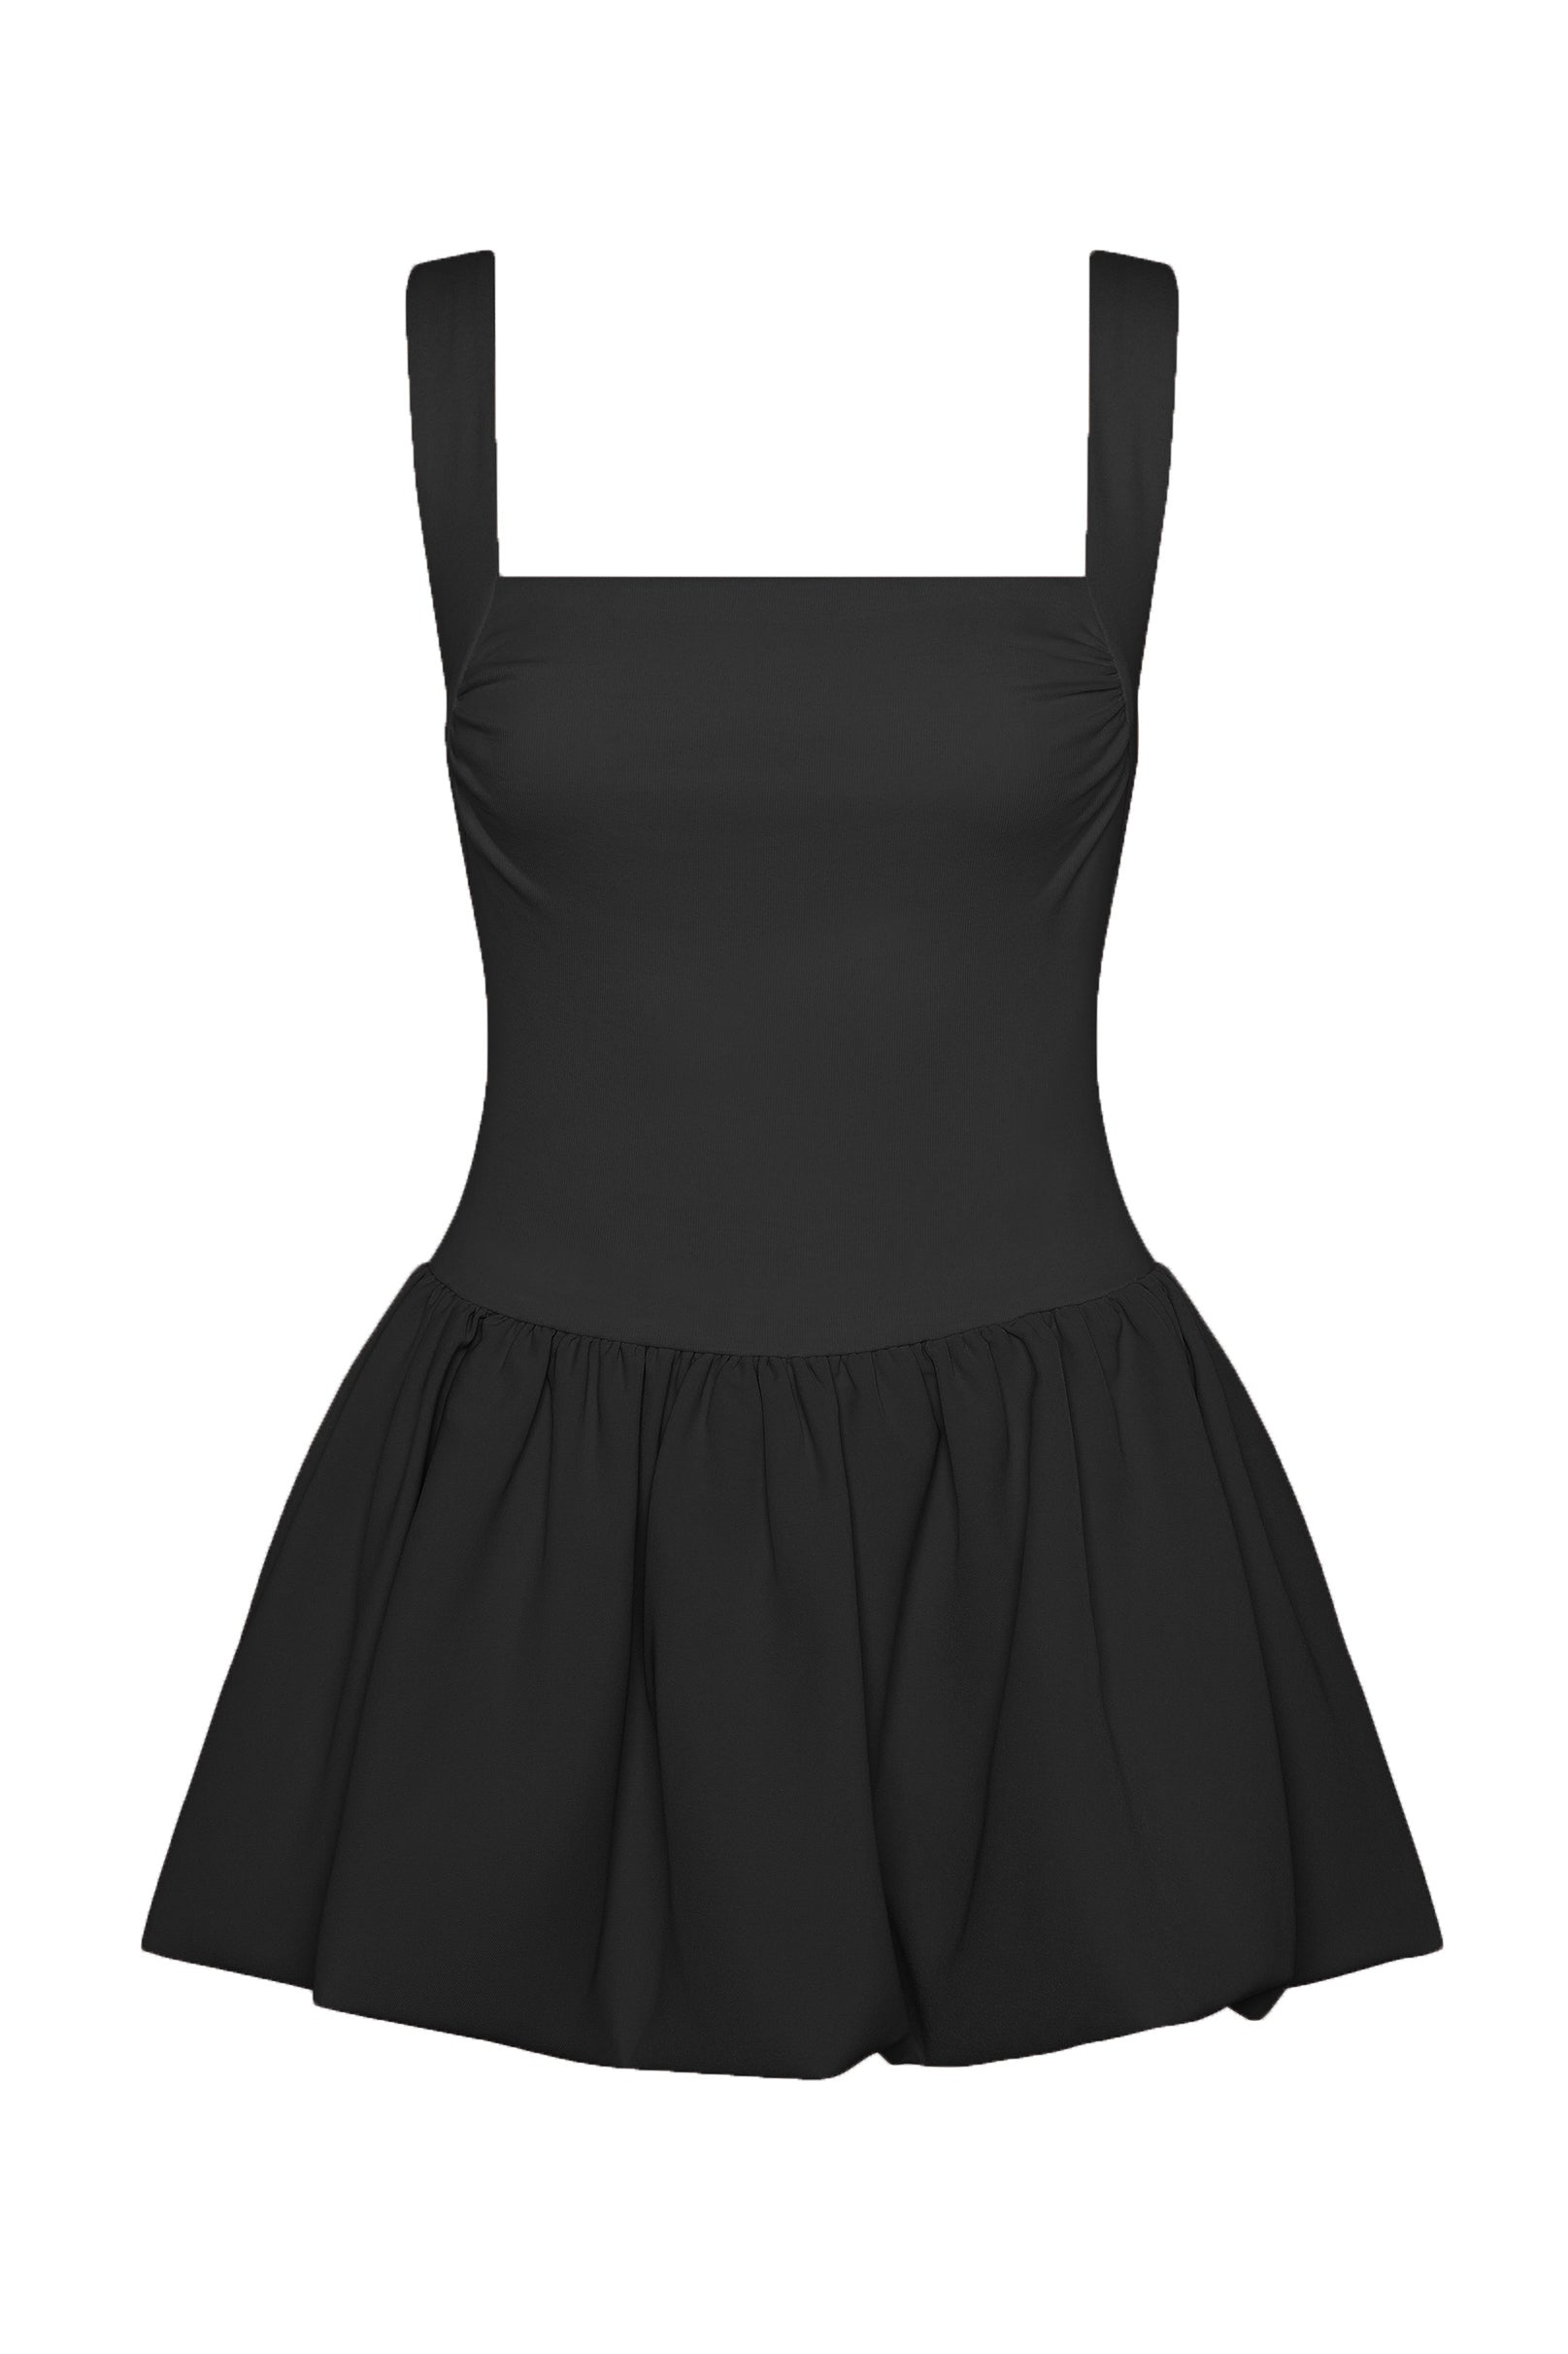 Bisou Bubble Knit Mini Dress - Black